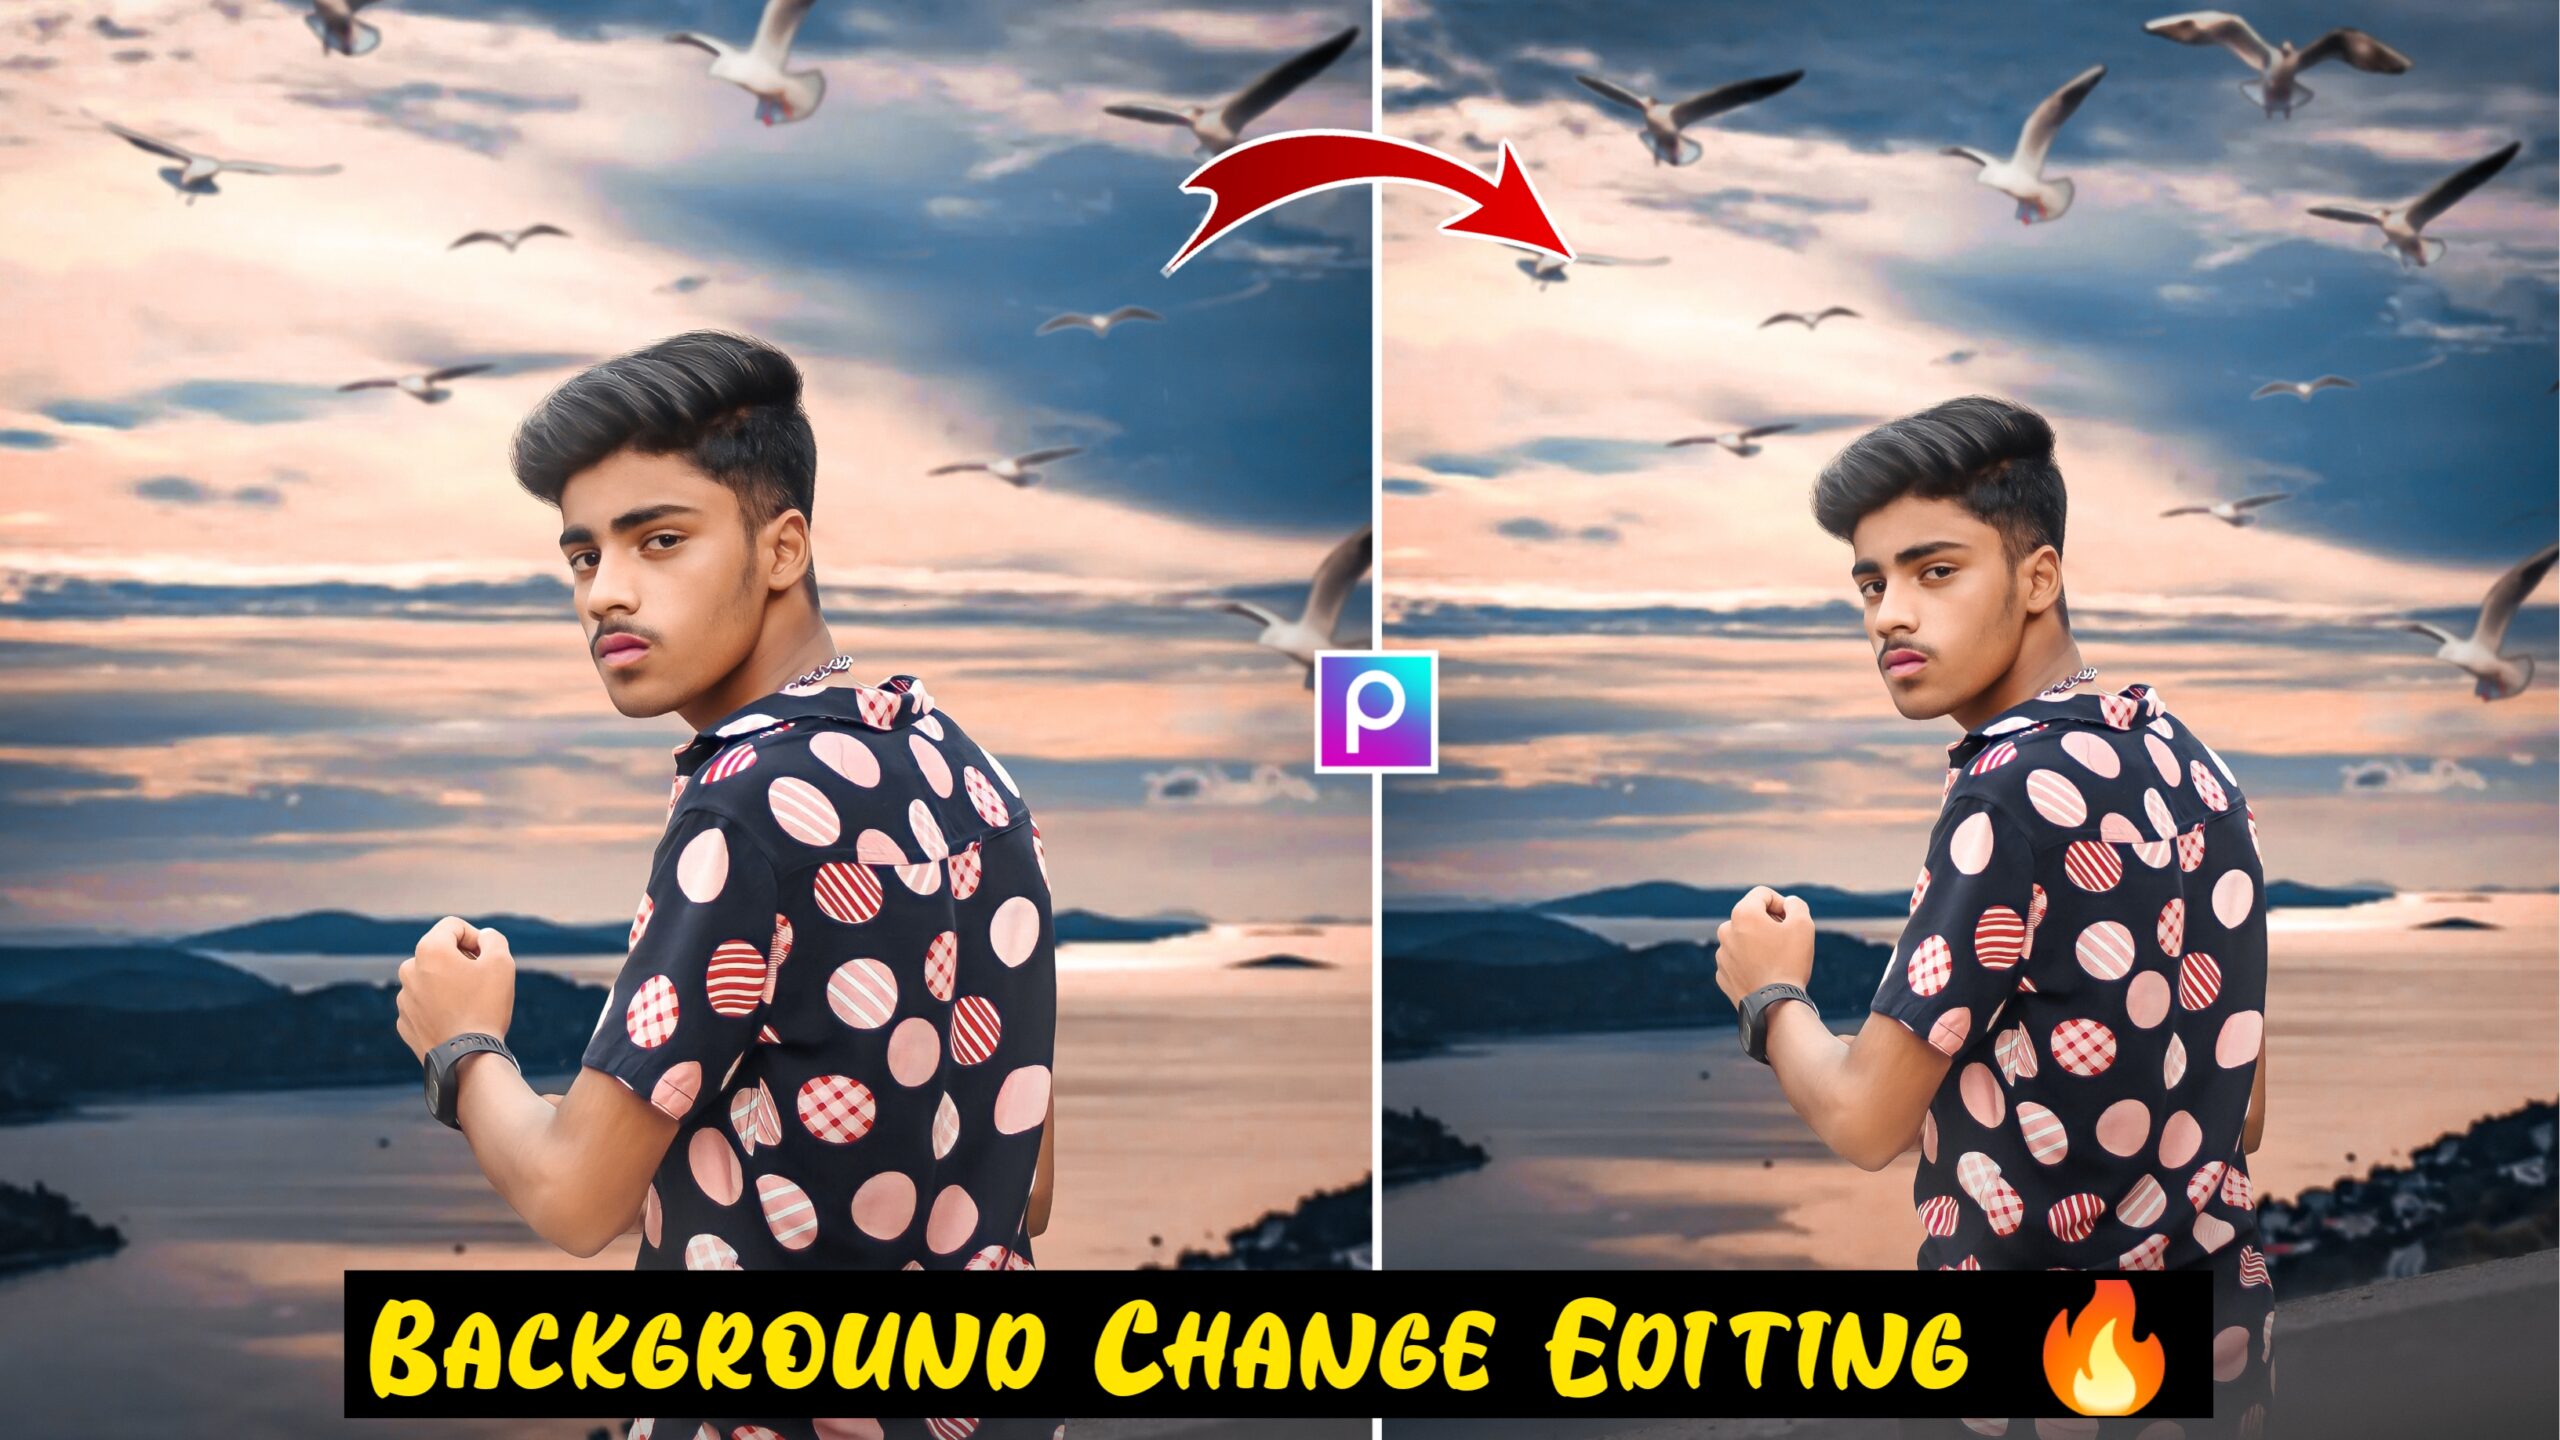 Png Backgrounds For Picsart Blur picsart editing HD phone wallpaper   Pxfuel